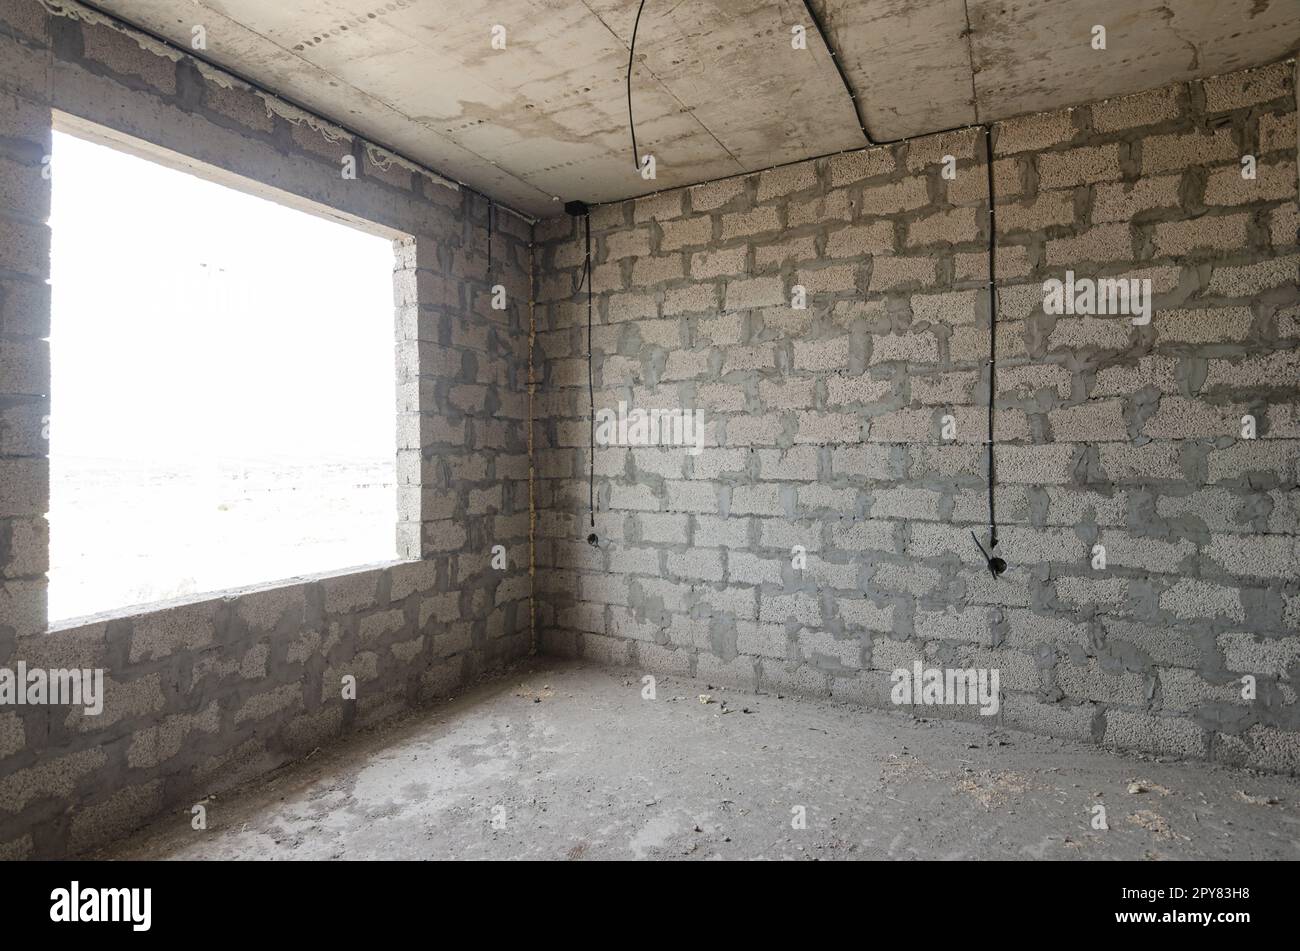 La costruzione di un edificio residenziale individuale, una vista della parete di cemento argilloso espanso senza finiture e una grande finestra spaziosa Foto Stock